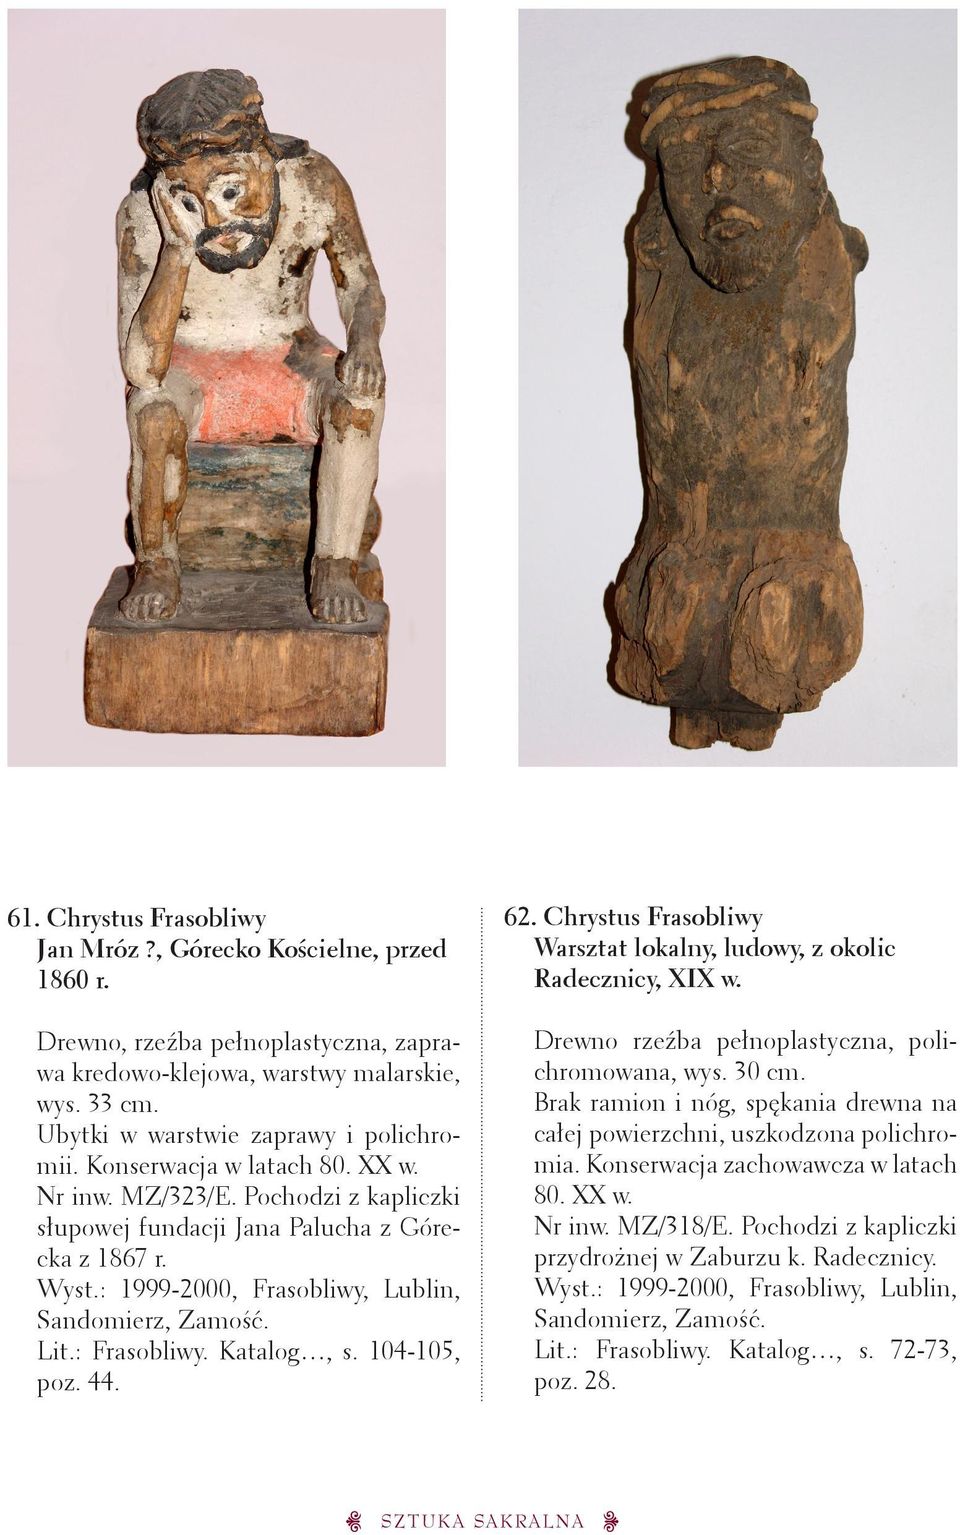 Chrystus Frasobliwy Warsztat lokalny, ludowy, z okolic Radecznicy, XIX w. Drewno rzeźba pełnoplastyczna, polichromowana, wys. 30 cm.